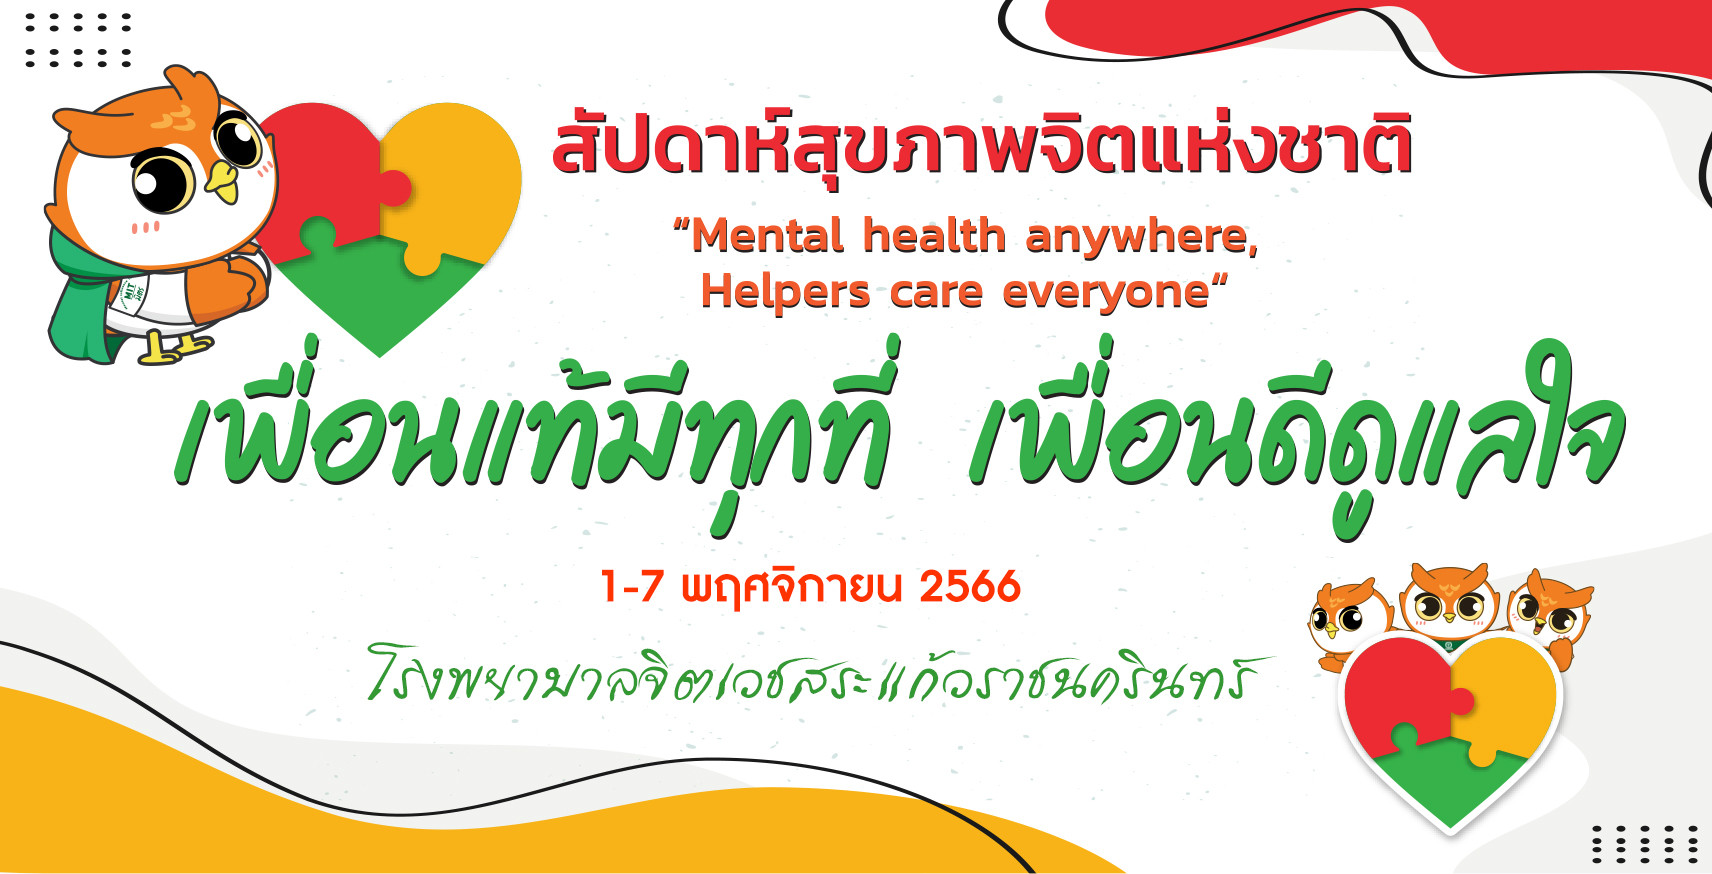 1-7 พฤศจิกายน 2566 สัปดาห์สุขภาพจิตแห่งชาติ ประจำปี 2566 “Mental health anywhere, Helpers care everyone : เพื่อนแท้มีทุกที่ เพื่อนดีดูแลใจ”